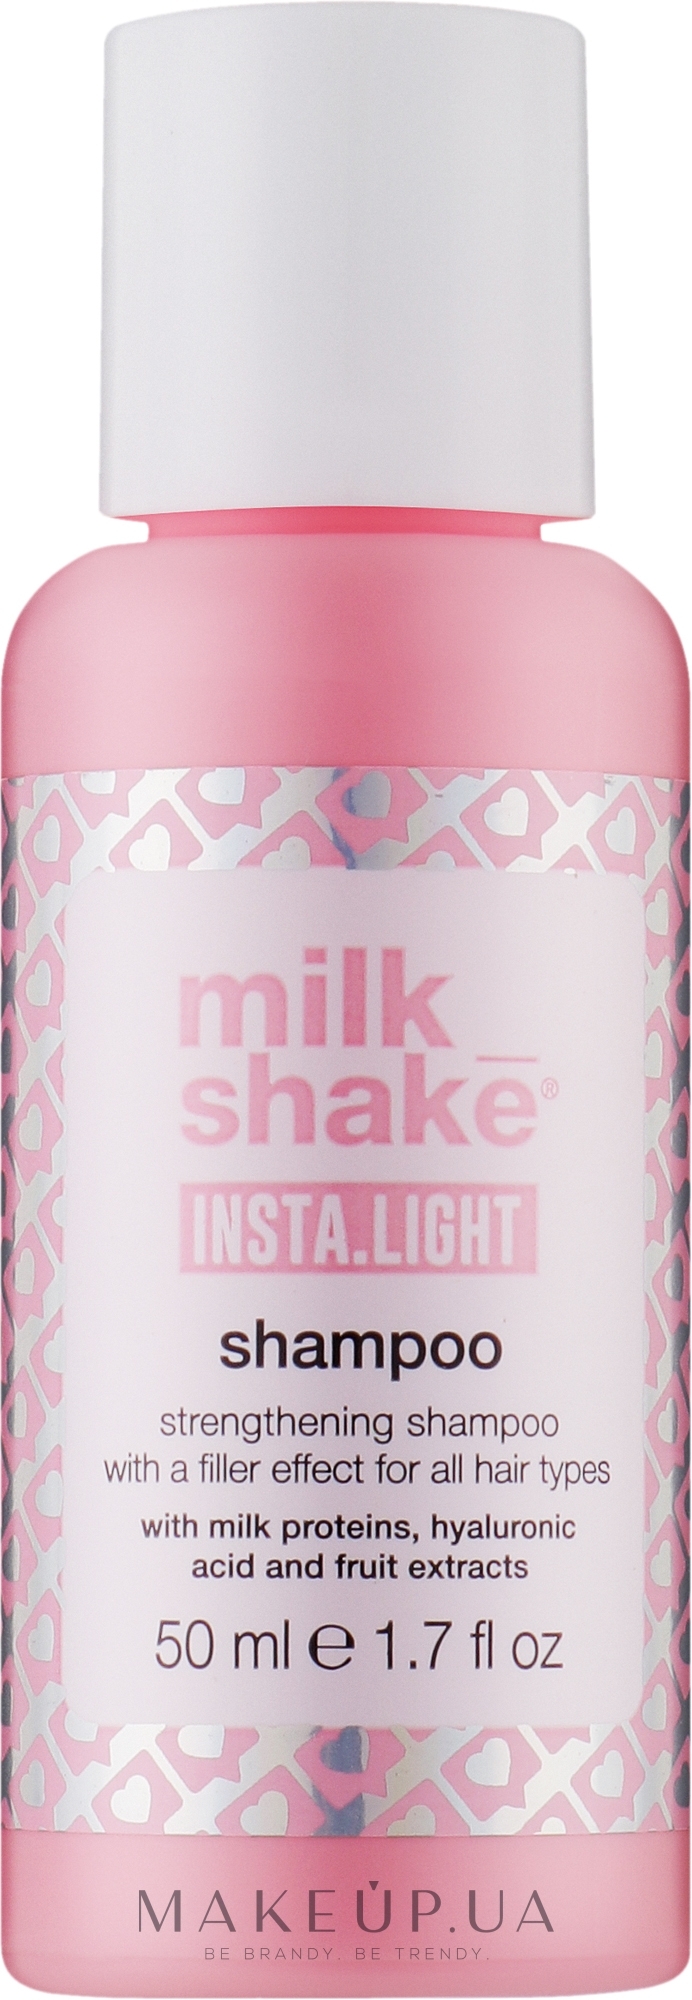 Укрепляющий шампунь с эффектом наполнителя для всех типов волос - Milk_Shake Insta.Light Shampoo  — фото 50ml